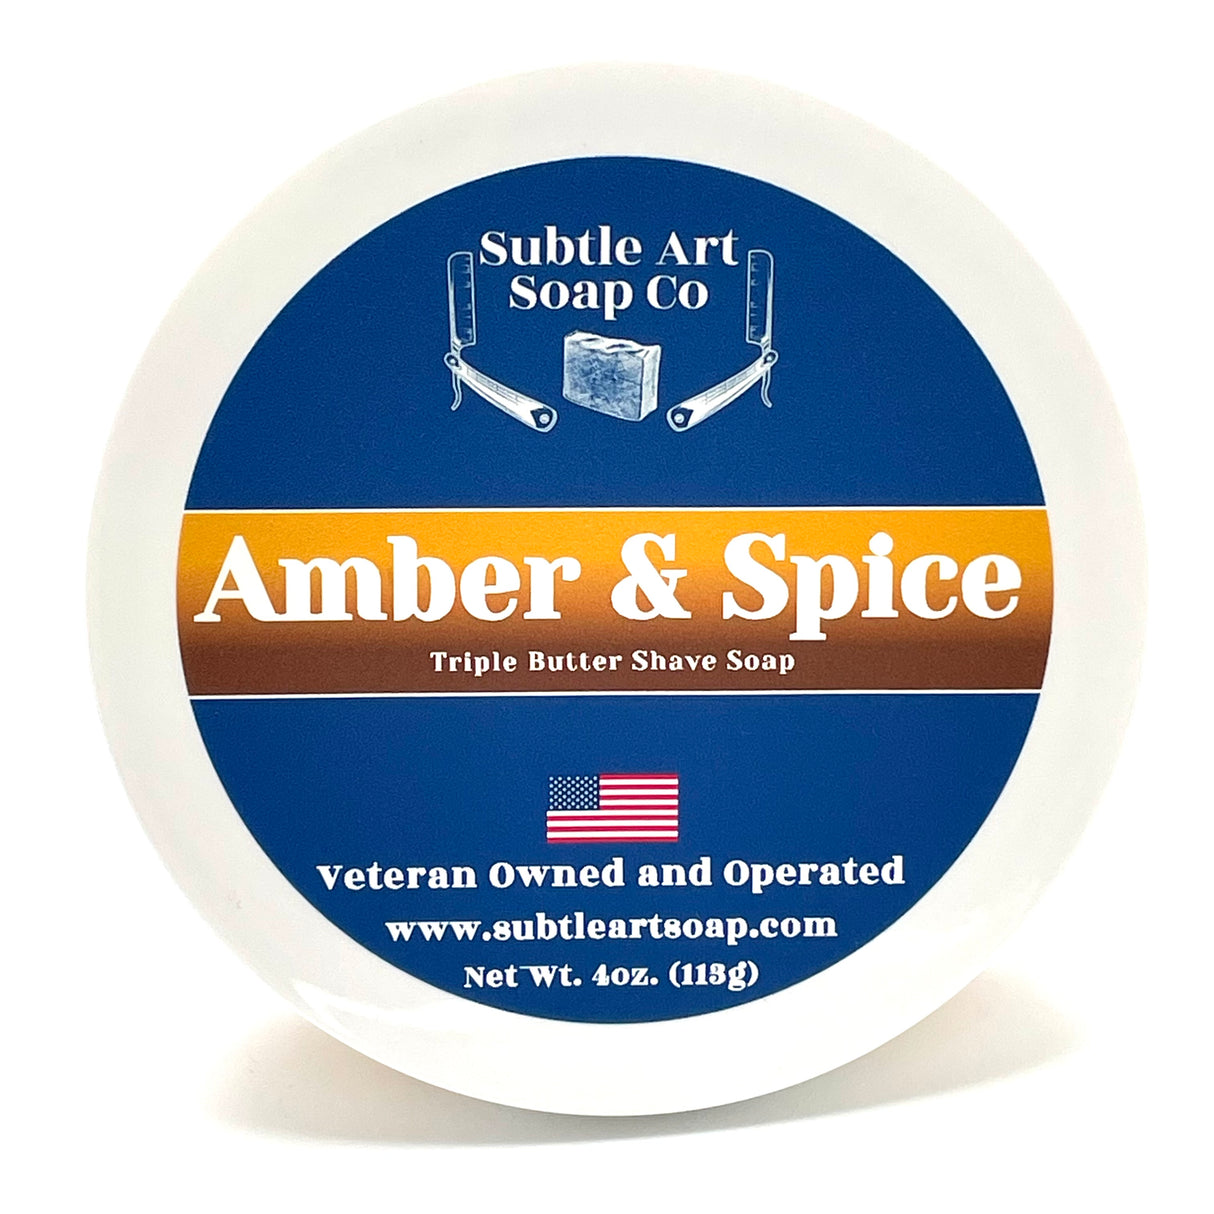 Subtle Art Soap Co. - Amber & Spice - Triple Butter Shave Soap - 4oz